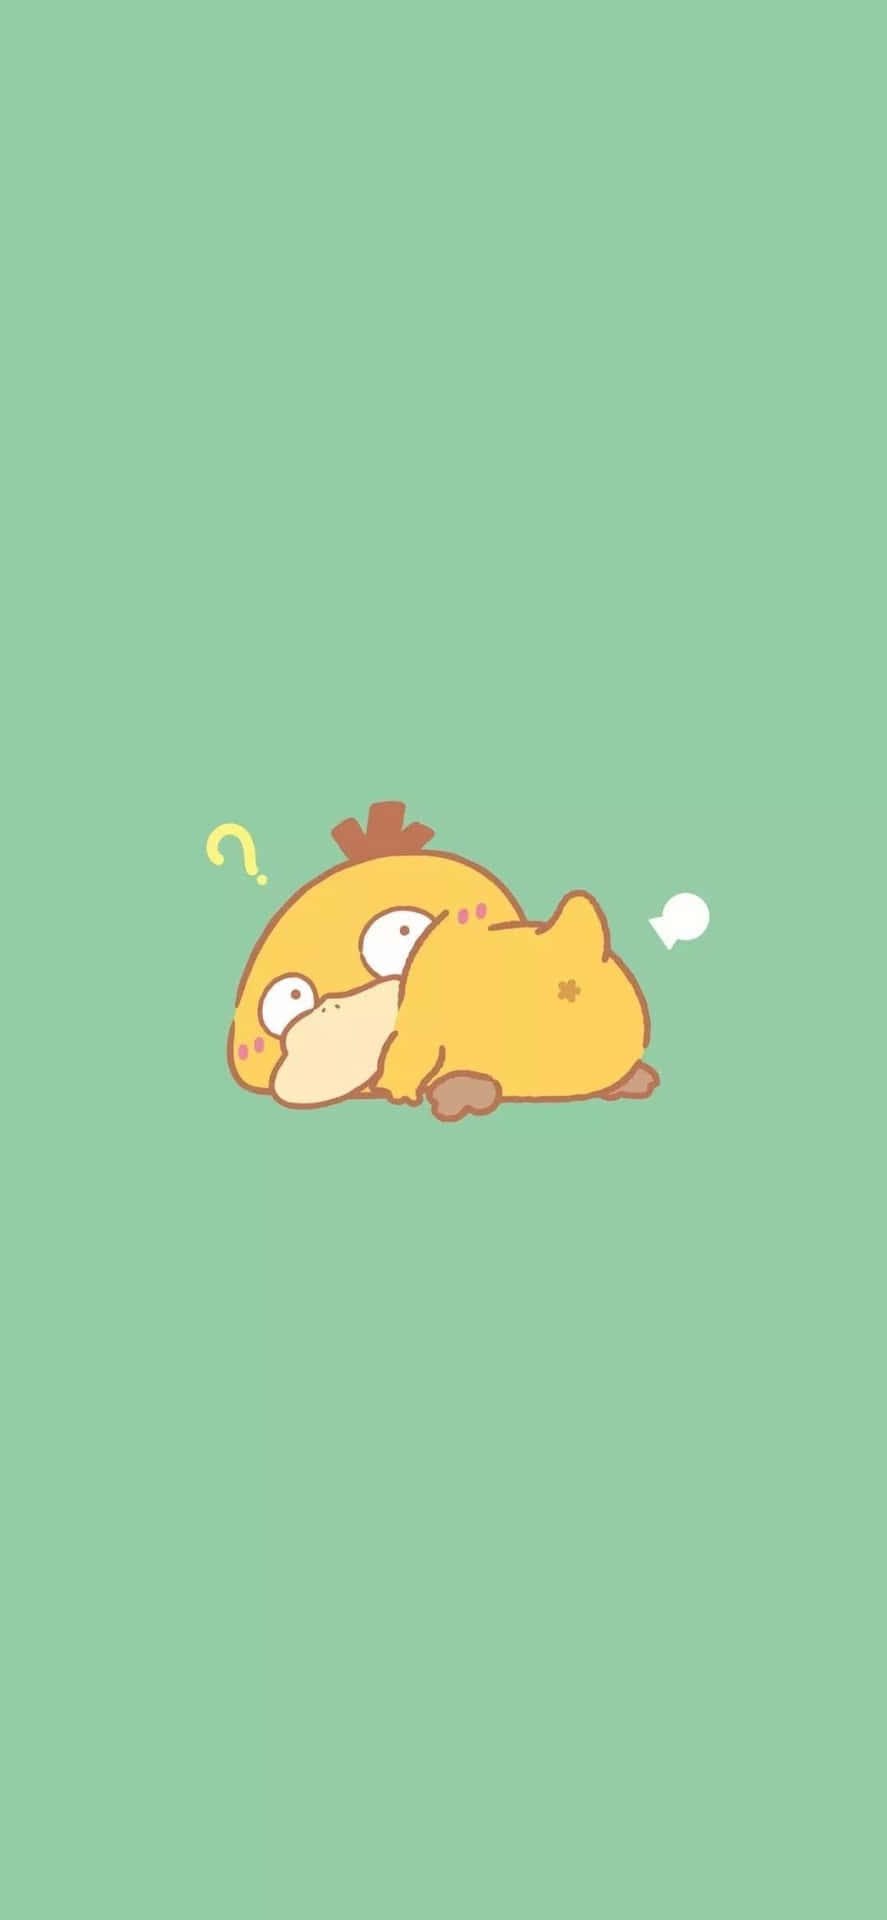 Sleepy Psyduck Pokemon Art Wallpaper